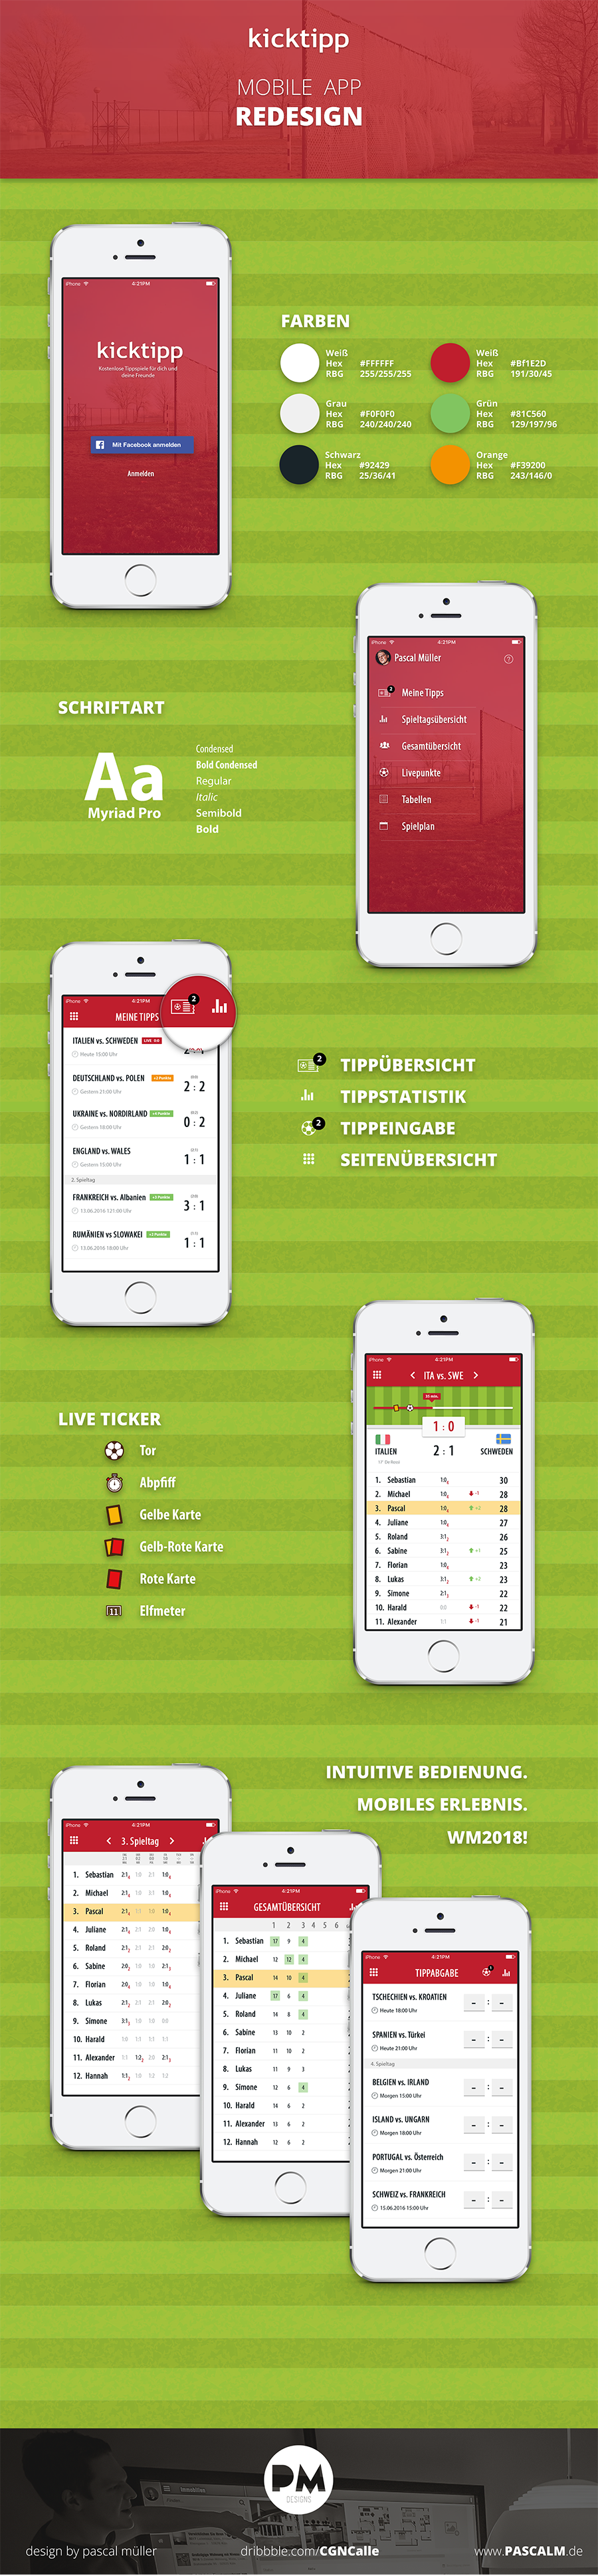 Kicktipp app resdeisgn publish